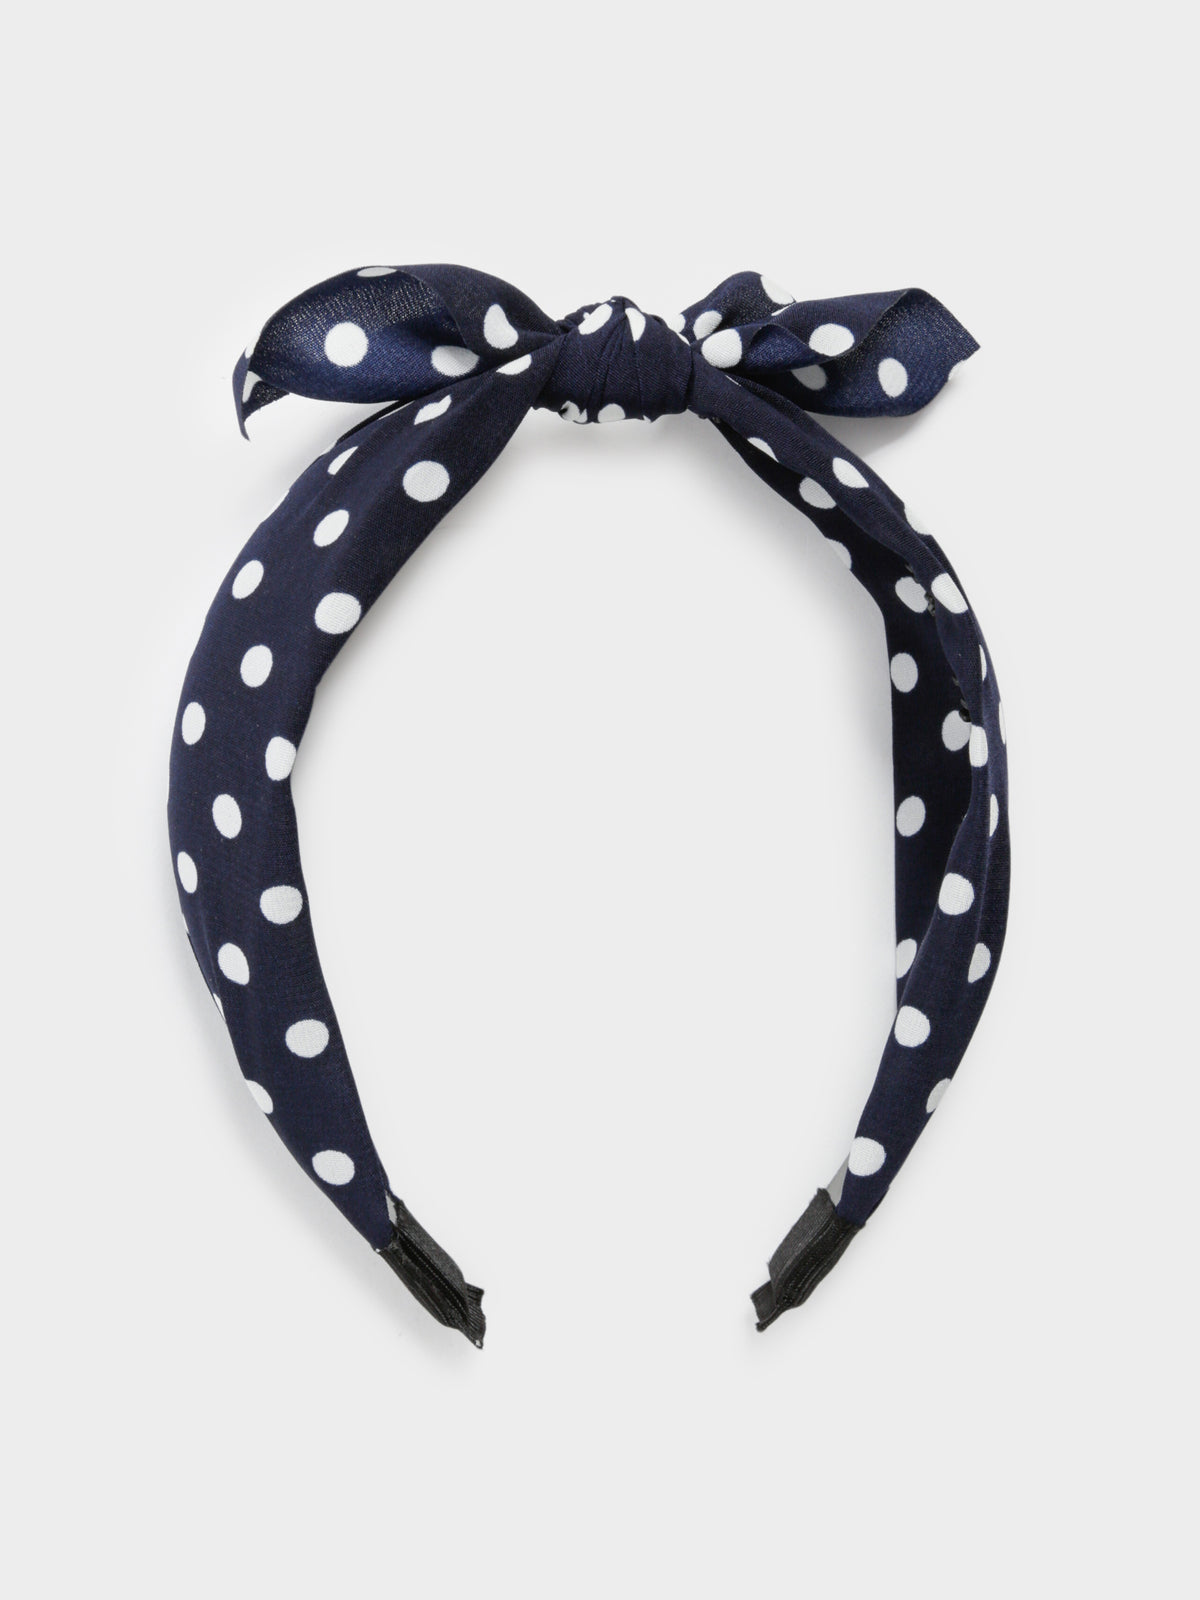 Spotty Top-Knot Headband in Navy &amp; White Polka Dots